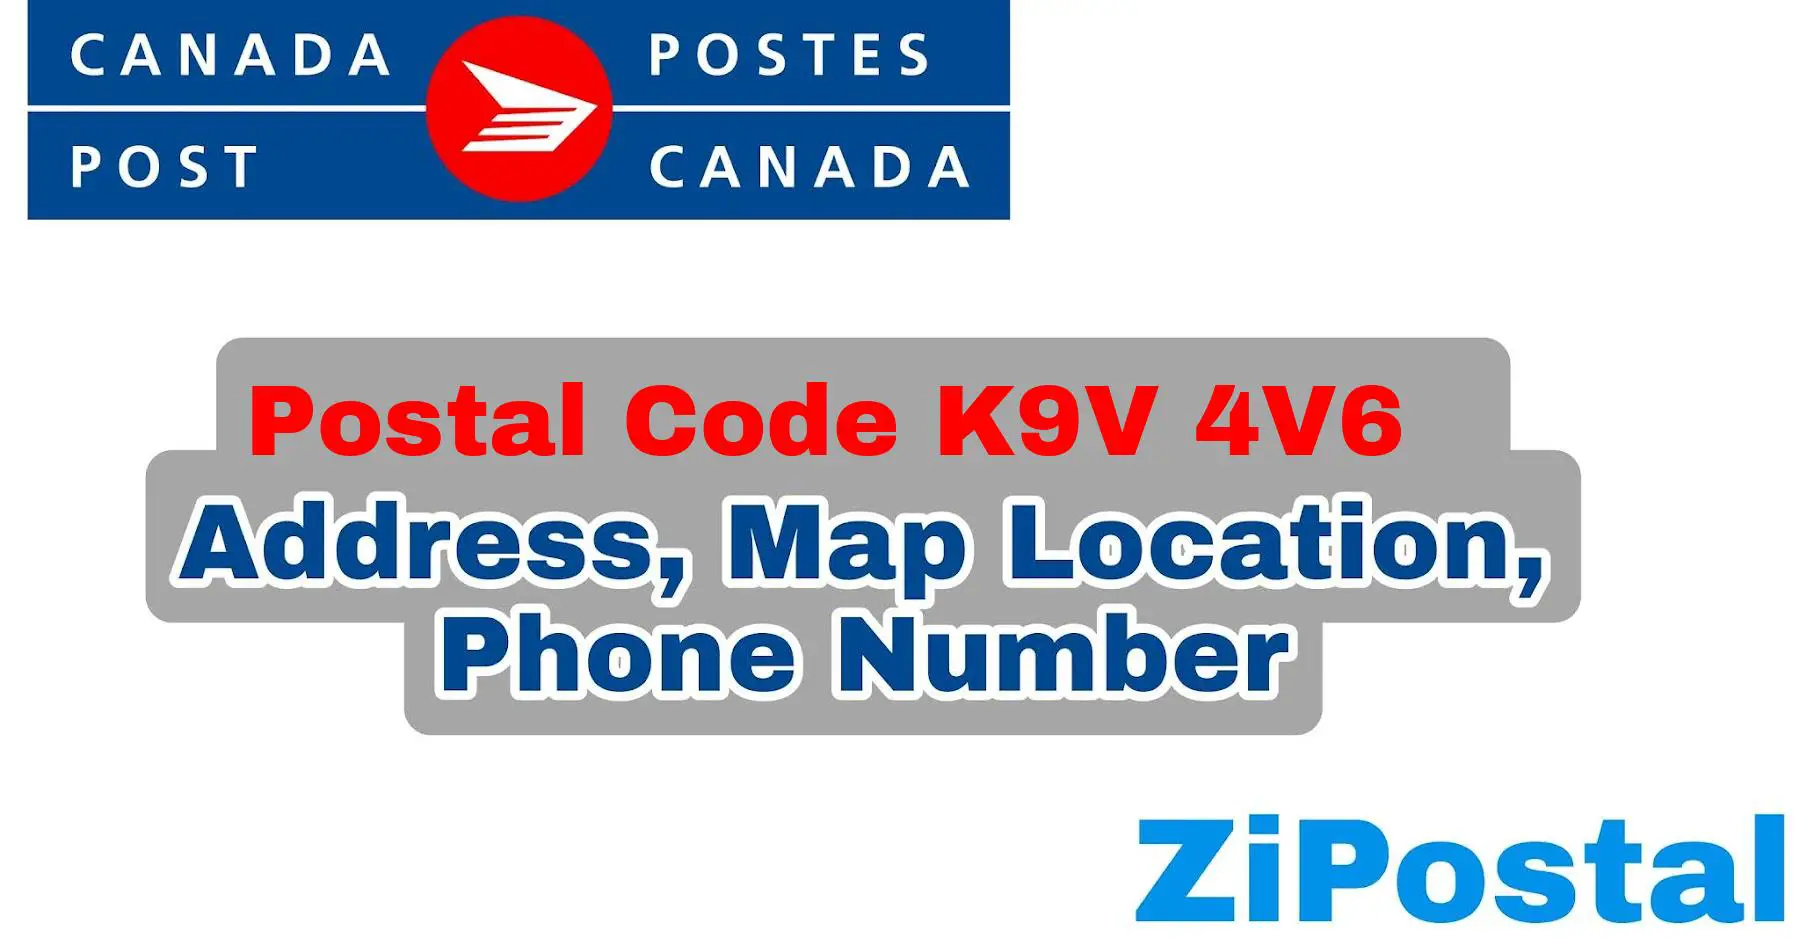 Postal Code K9V 4V6 Address Map Location and Phone Number